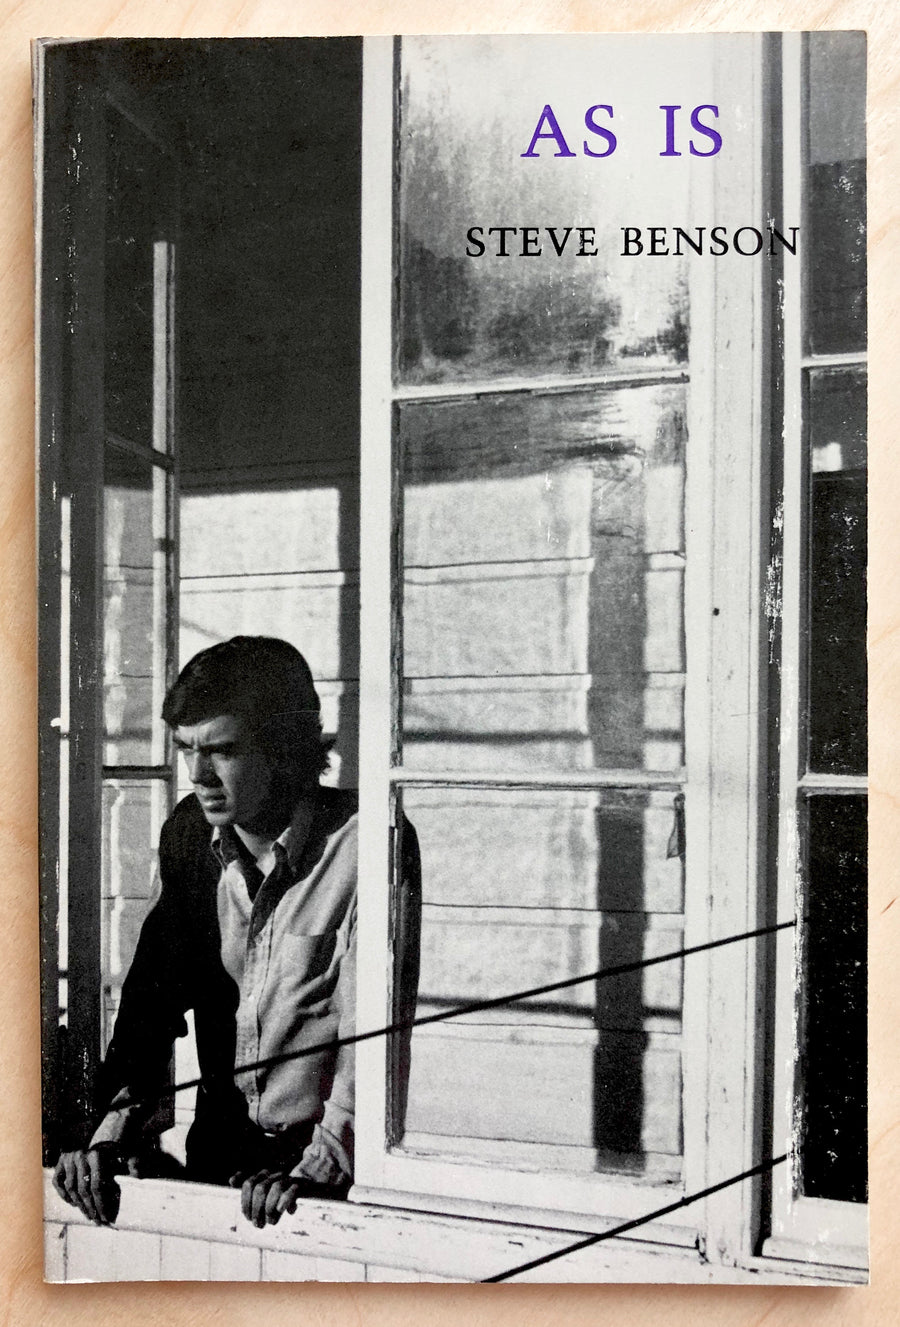 AS IS by Steve Benson